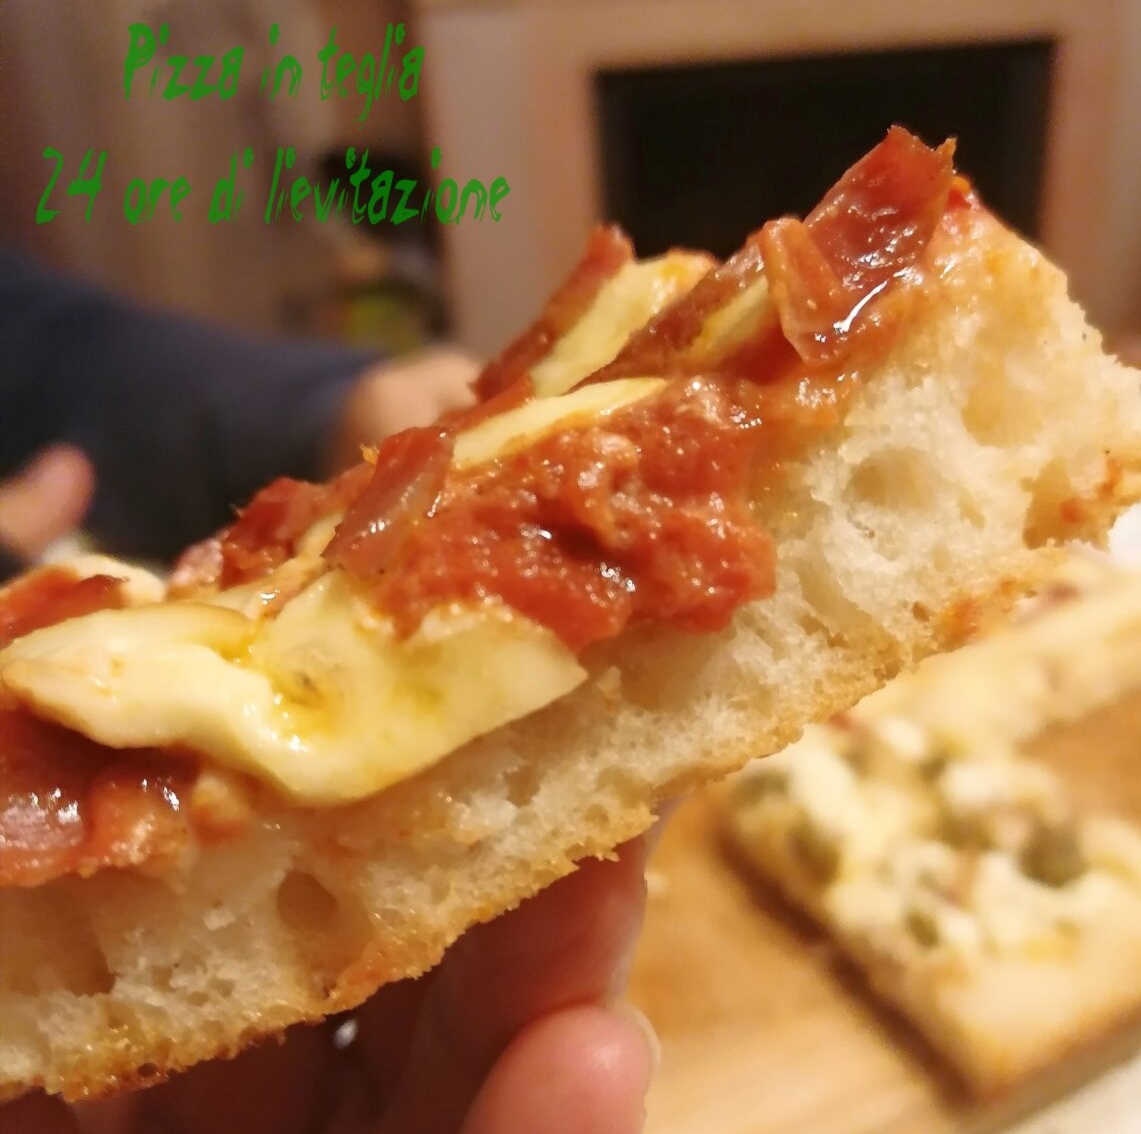 Pizza in teglia senza glutine 24 ore - La mia cucina gluten free by Annagaia